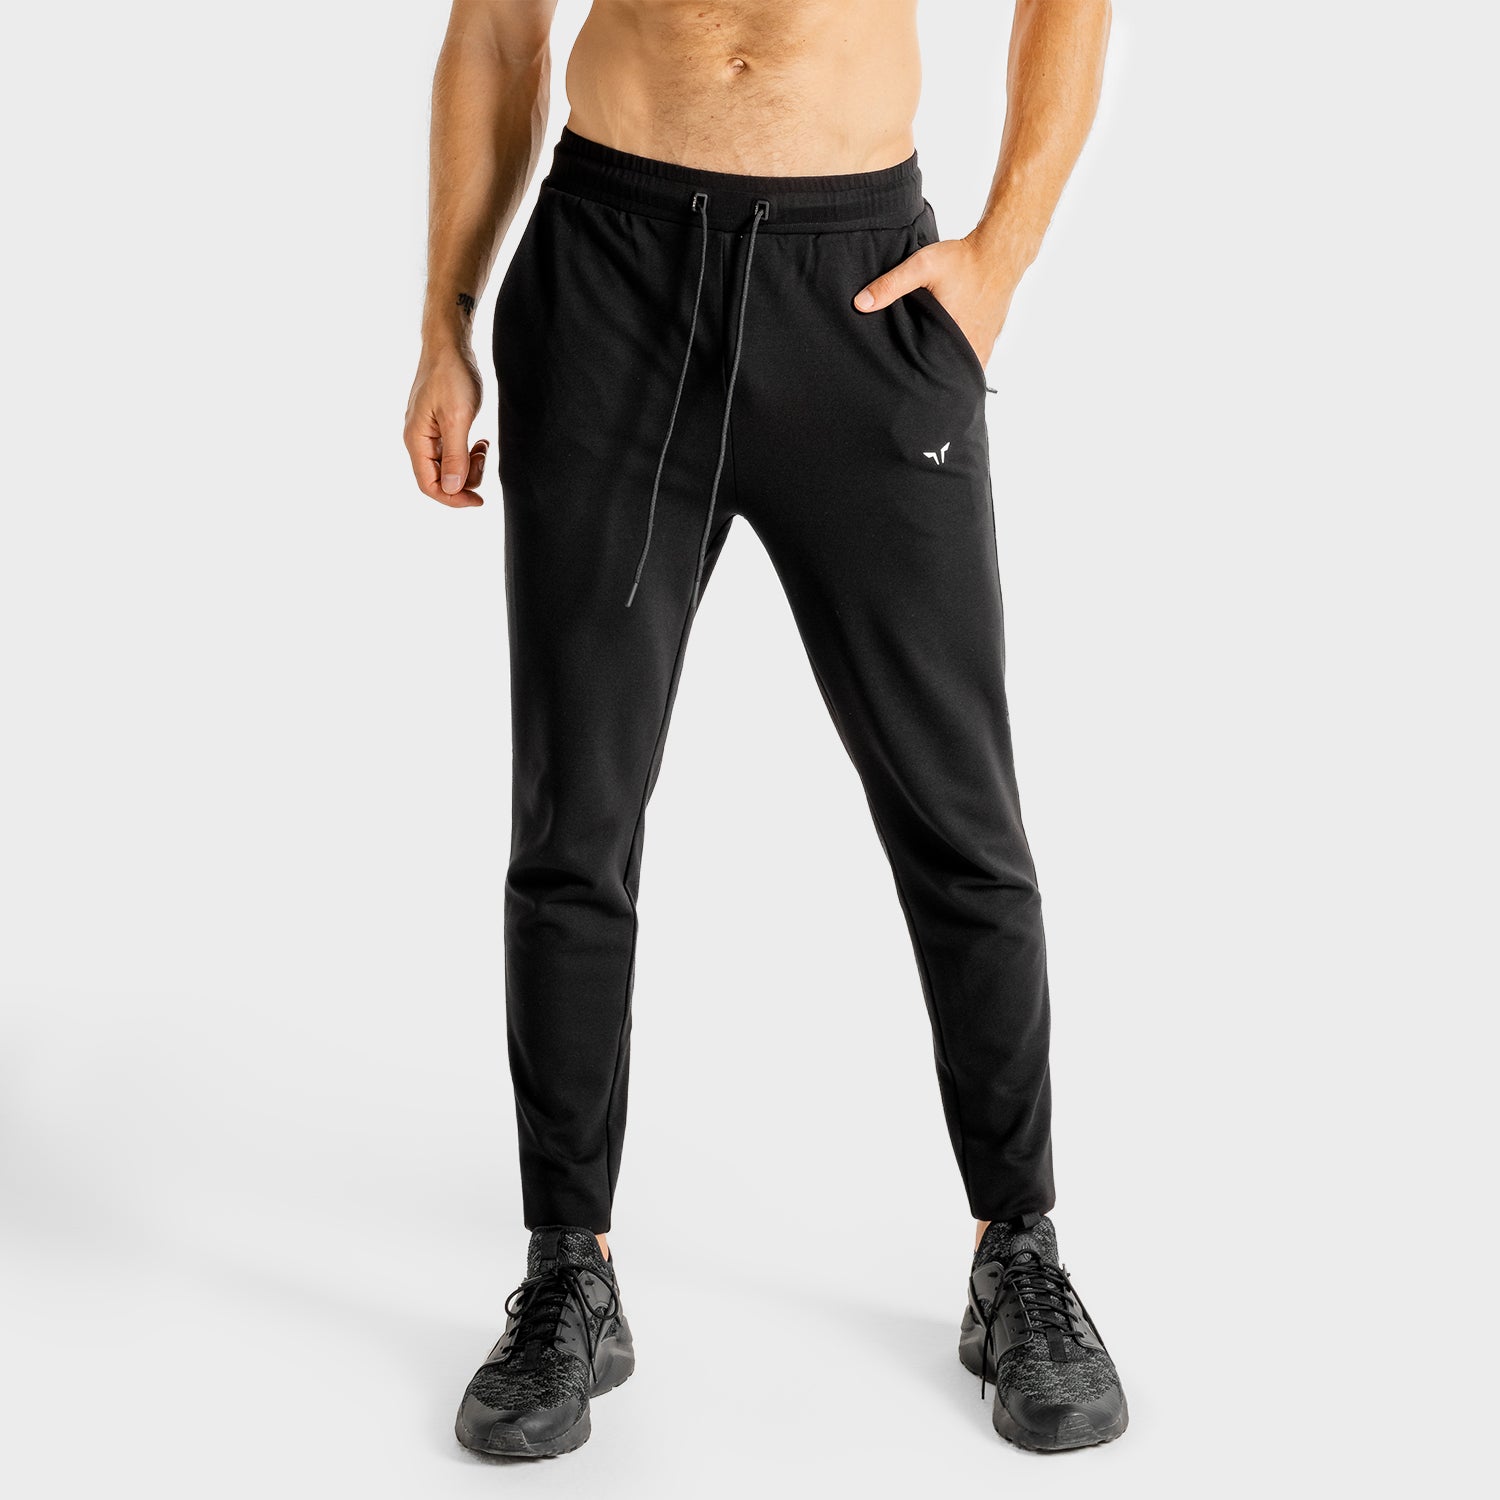 Men's Tek Gear Workout Pants  Workout pants, Mens workout pants, Black  pants